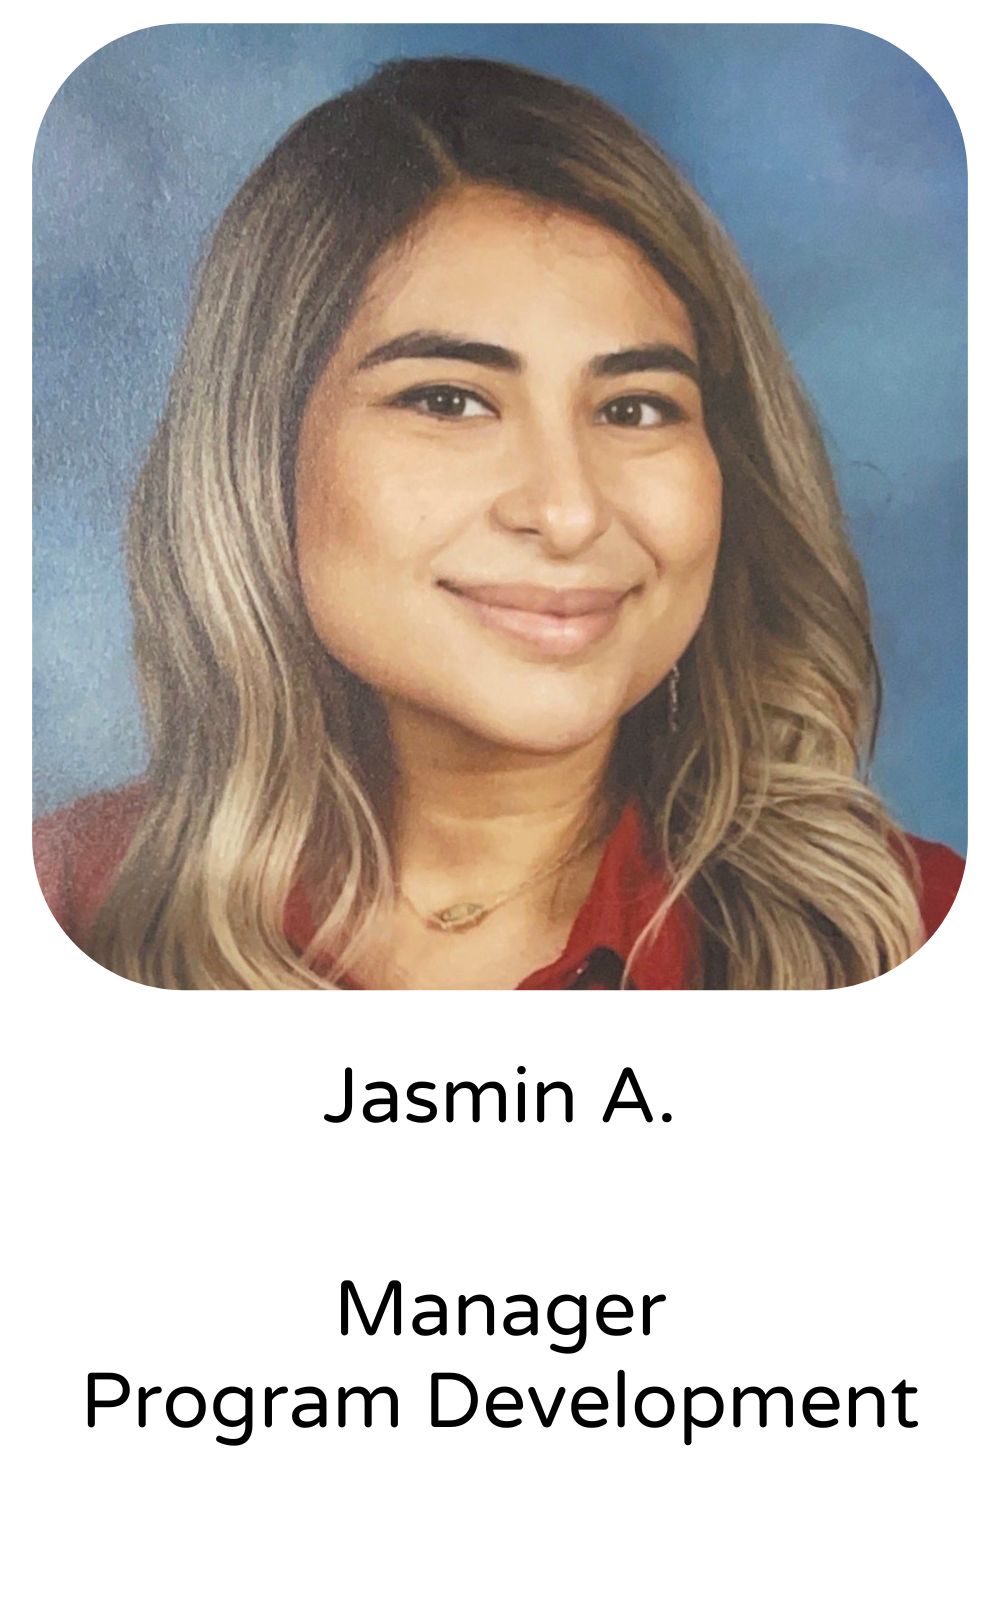 Jasmin A, Manager, Program Development